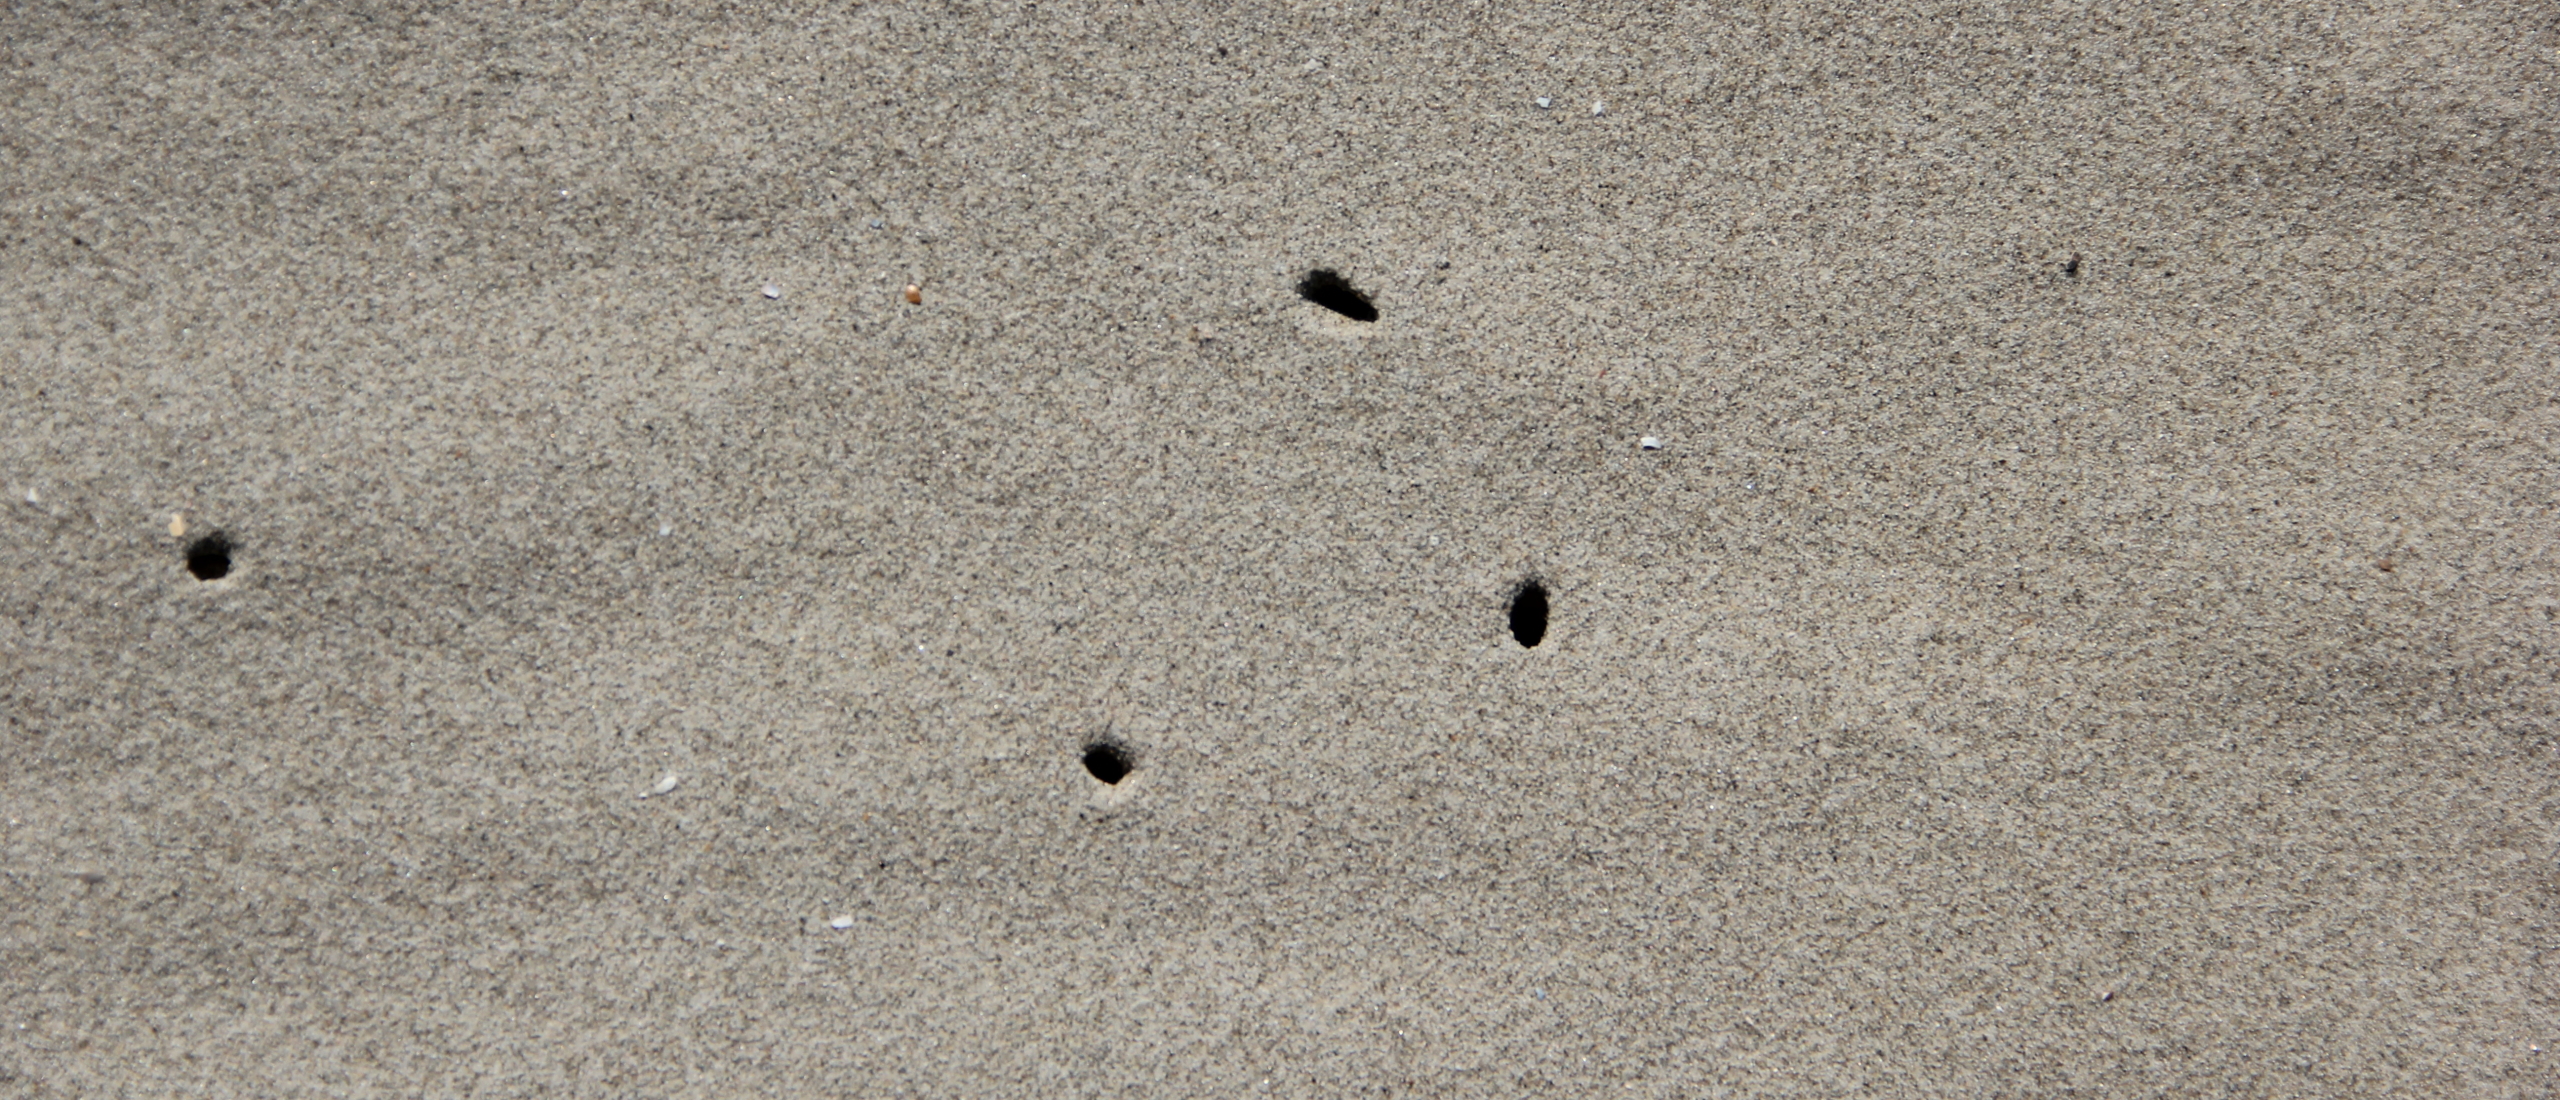 Zandvlooien – wat kan je er tegen doen en hoe herken je ze? ⛱️